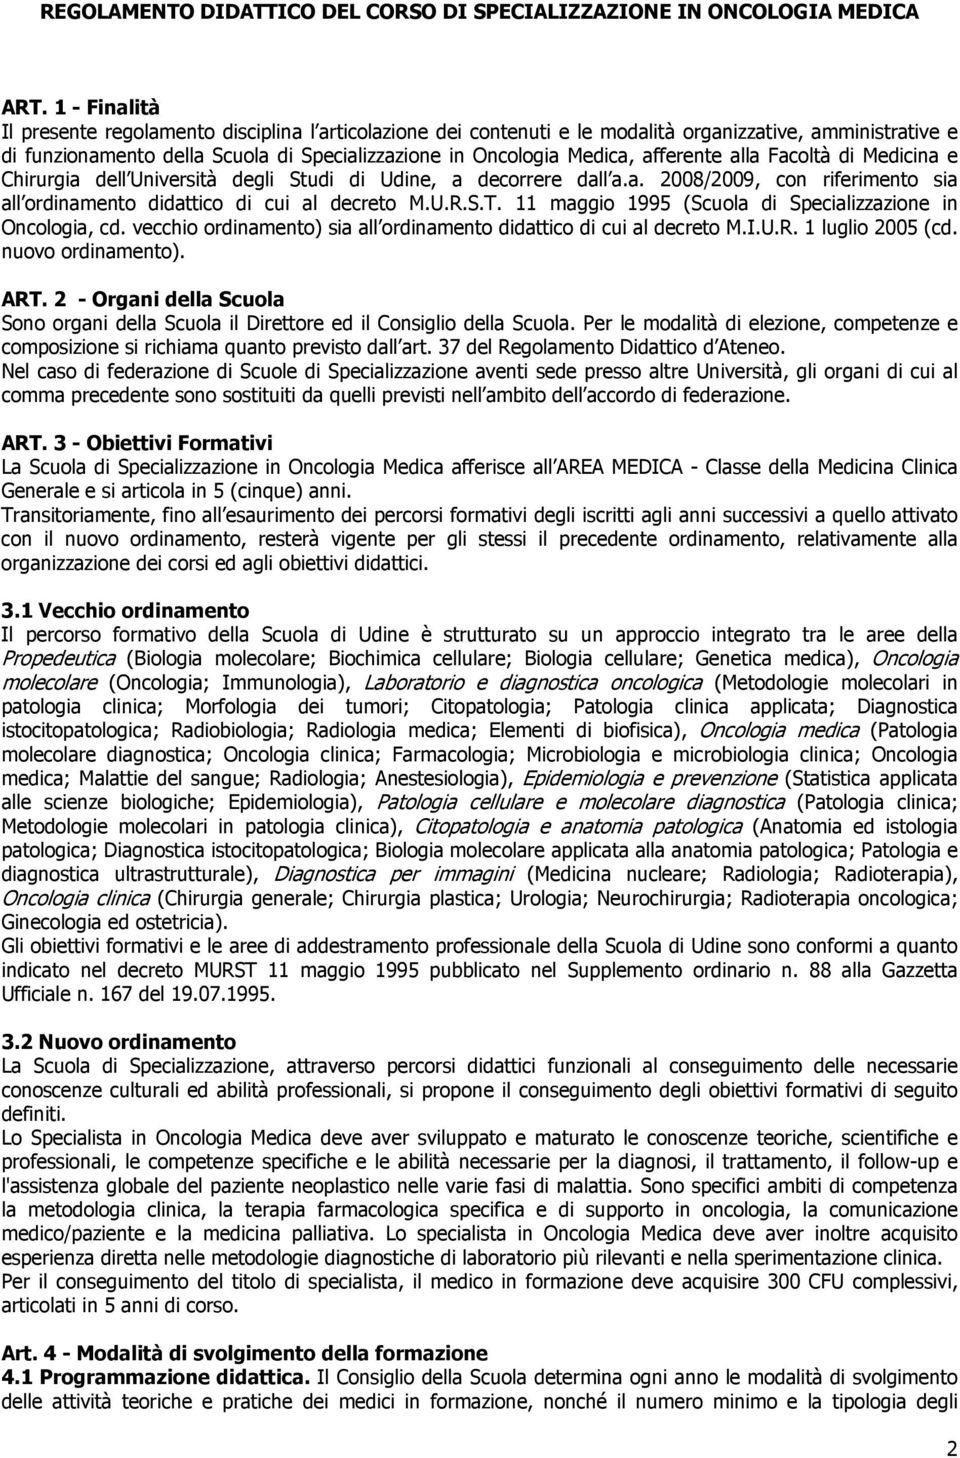 afferente alla Facoltà di Medicina e Chirurgia dell Università degli Studi di Udine, a decorrere dall a.a. 2008/2009, con riferimento sia all ordinamento didattico di cui al decreto M.U.R.S.T.